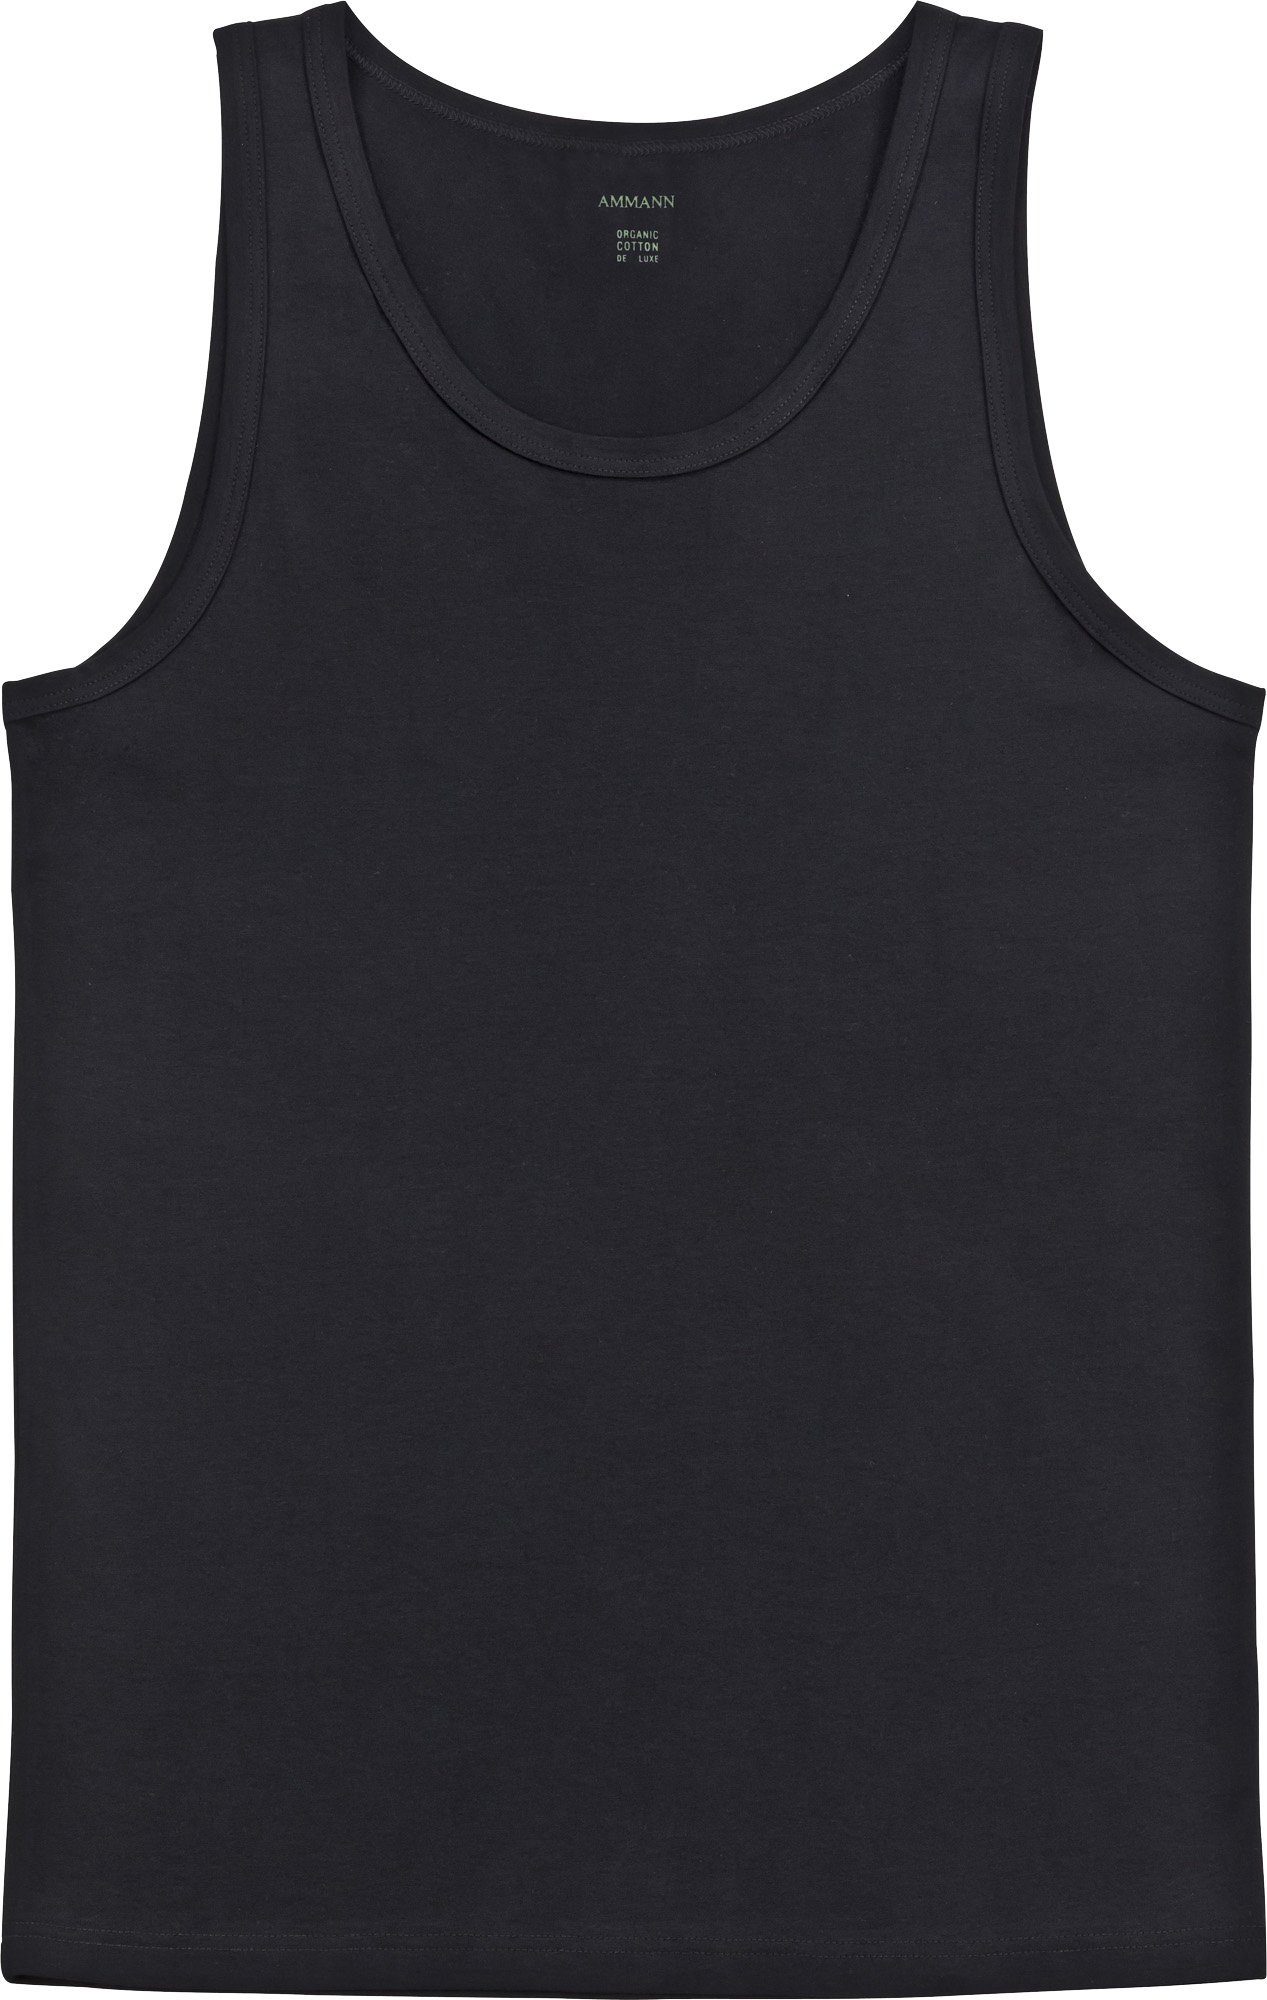 Ammann Unterhemd Bio Herren-Unterhemd Single-Jersey Uni schwarz